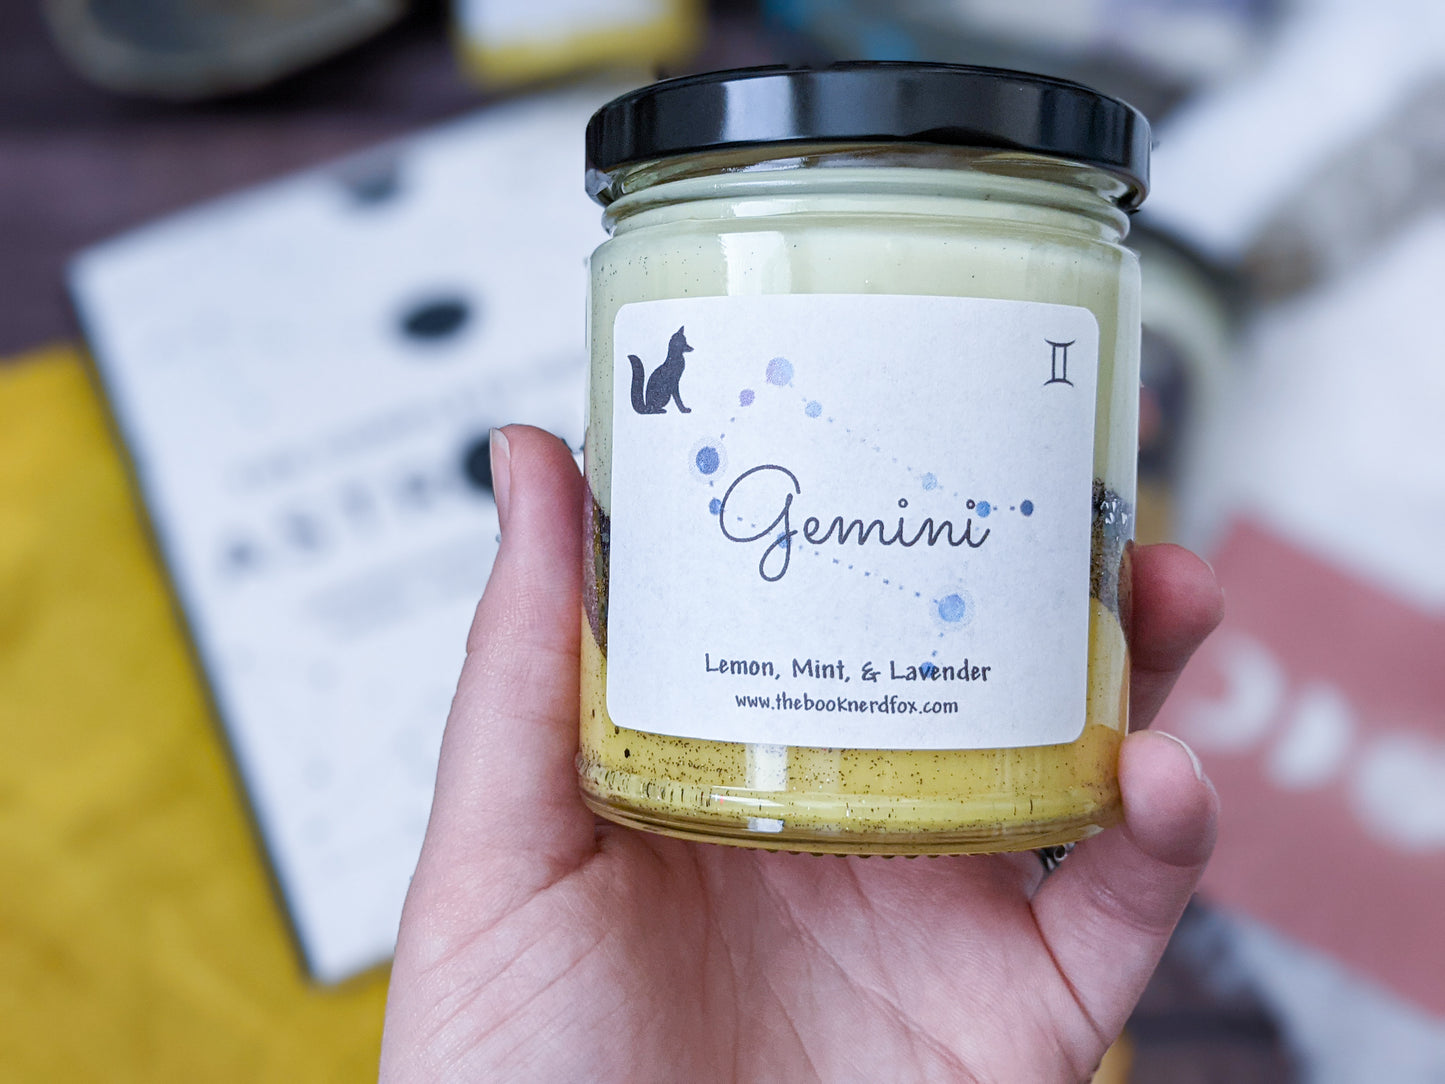 Gemini - Lemon, Mint, Lavender